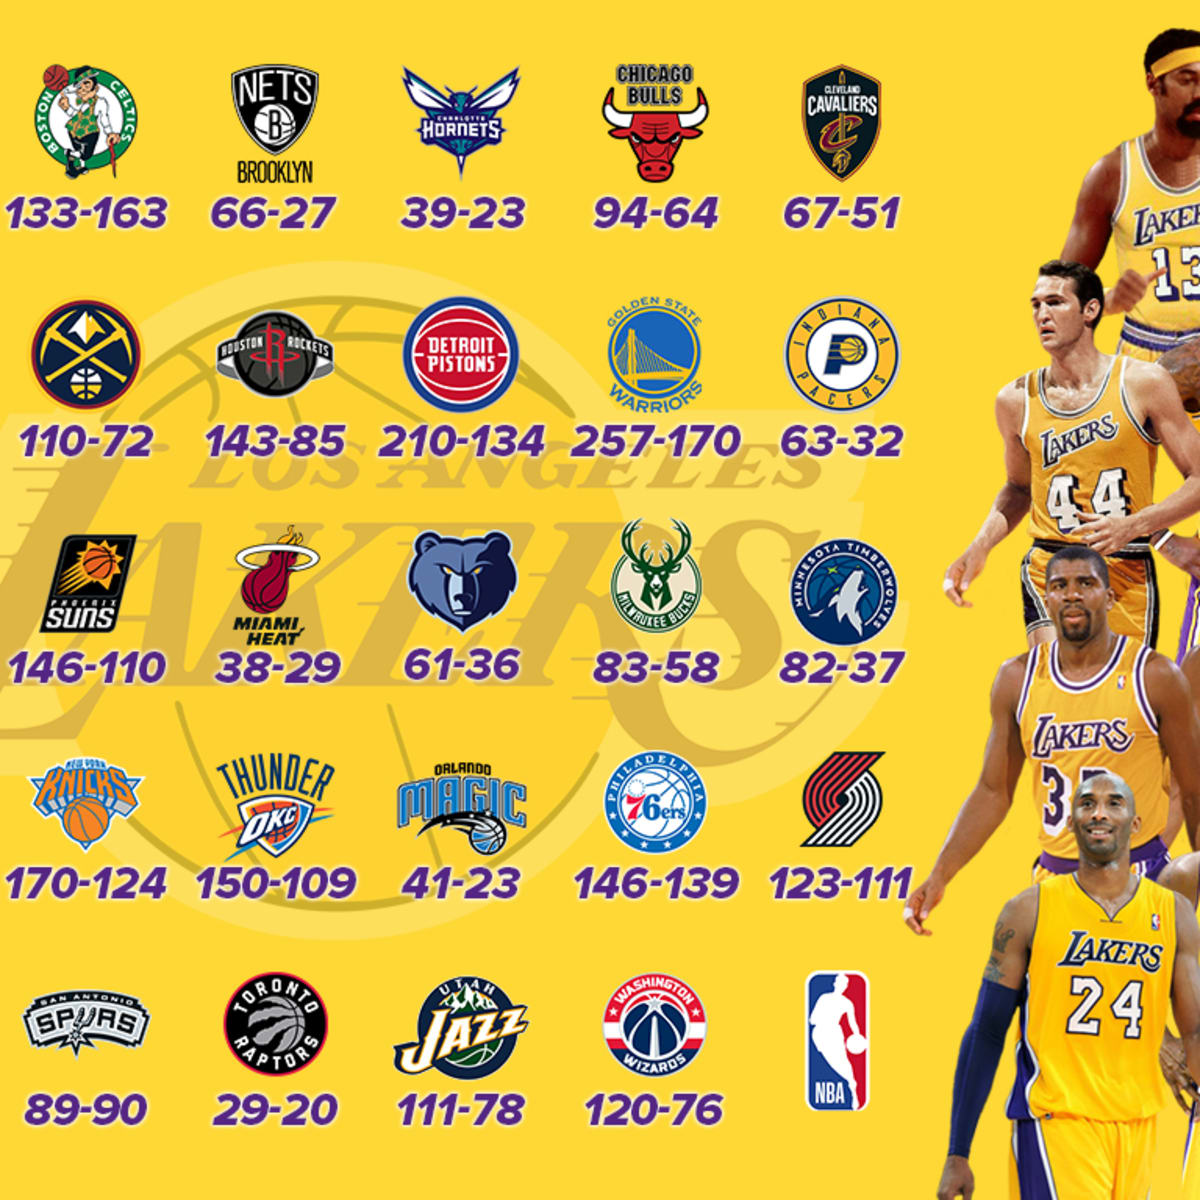 Kobe scores season-high 38, Lakers avoid longest losing streak in team  history